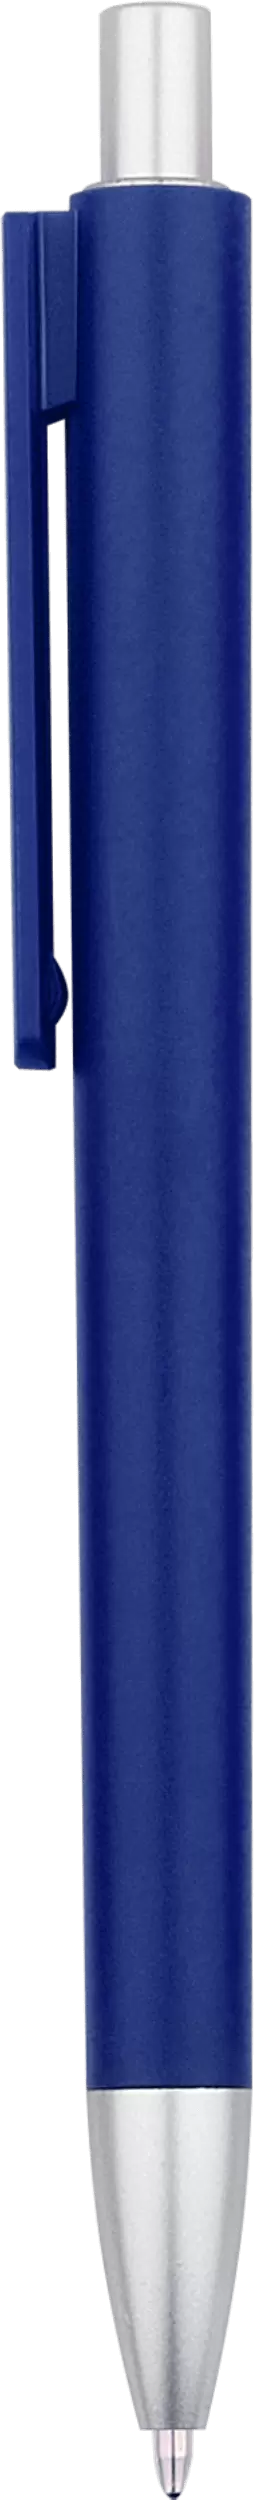 Ручка VIKO COLOR Темно-синяя 2022-14